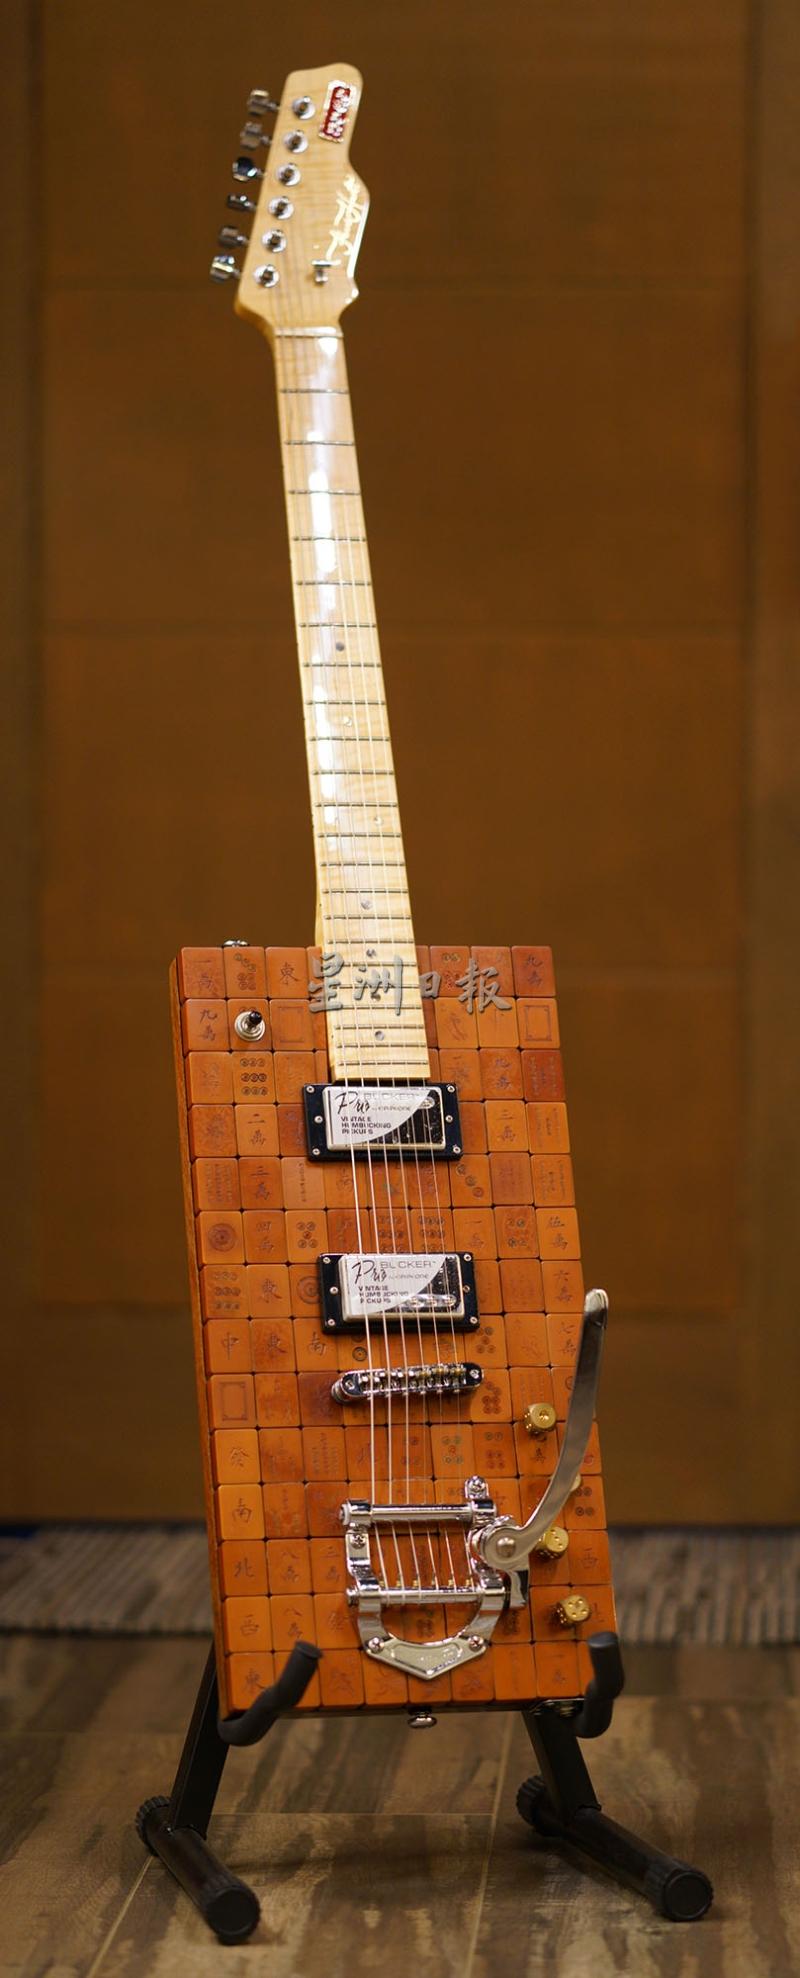 用古董麻将制作成吉他体，打造出独一无二的吉他。